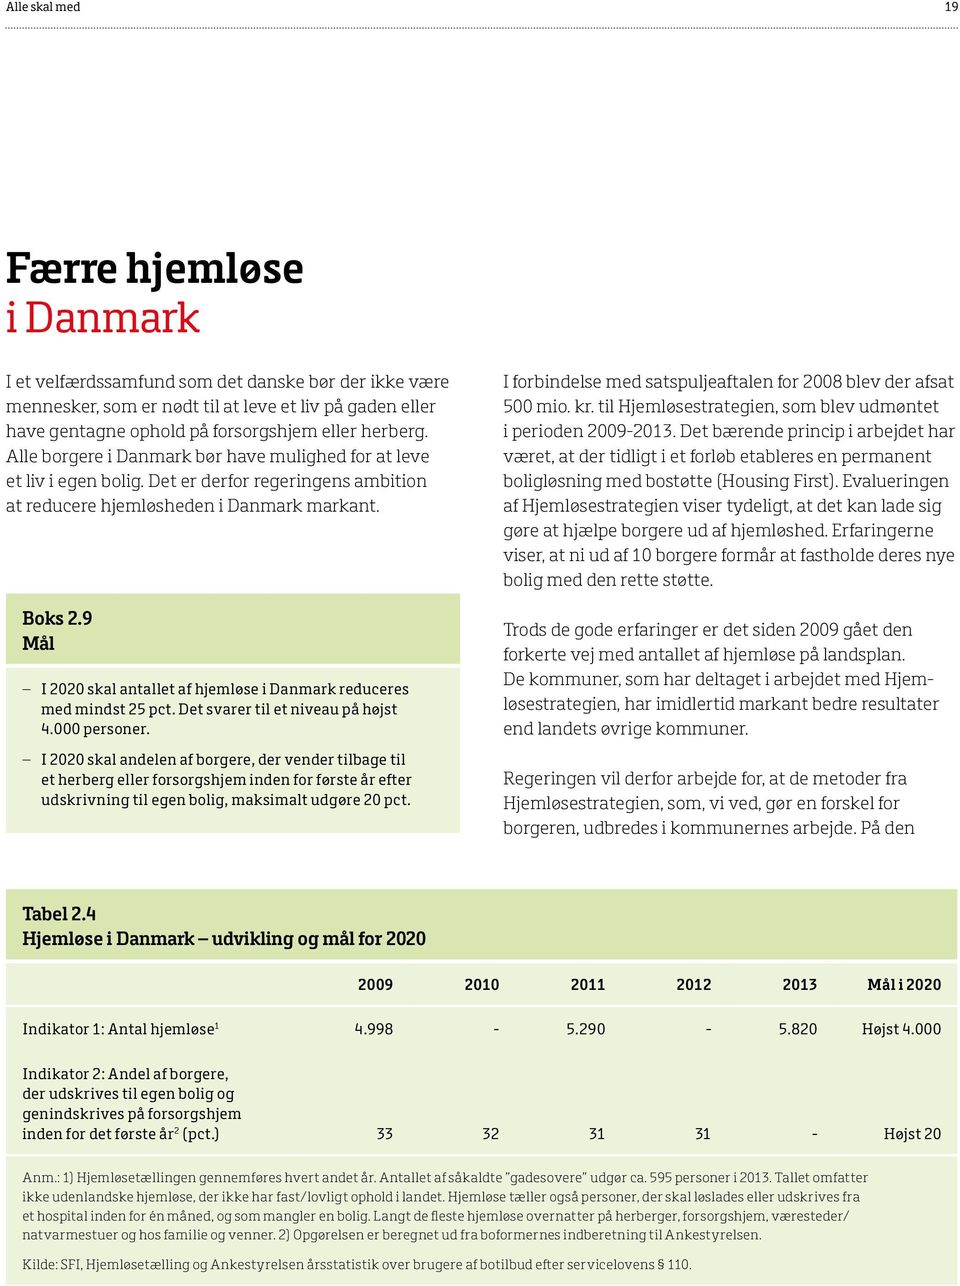 9 Mål I 2020 skal antallet af hjemløse i Danmark reduceres med mindst 25 pct. Det svarer til et niveau på højst 4.000 personer.